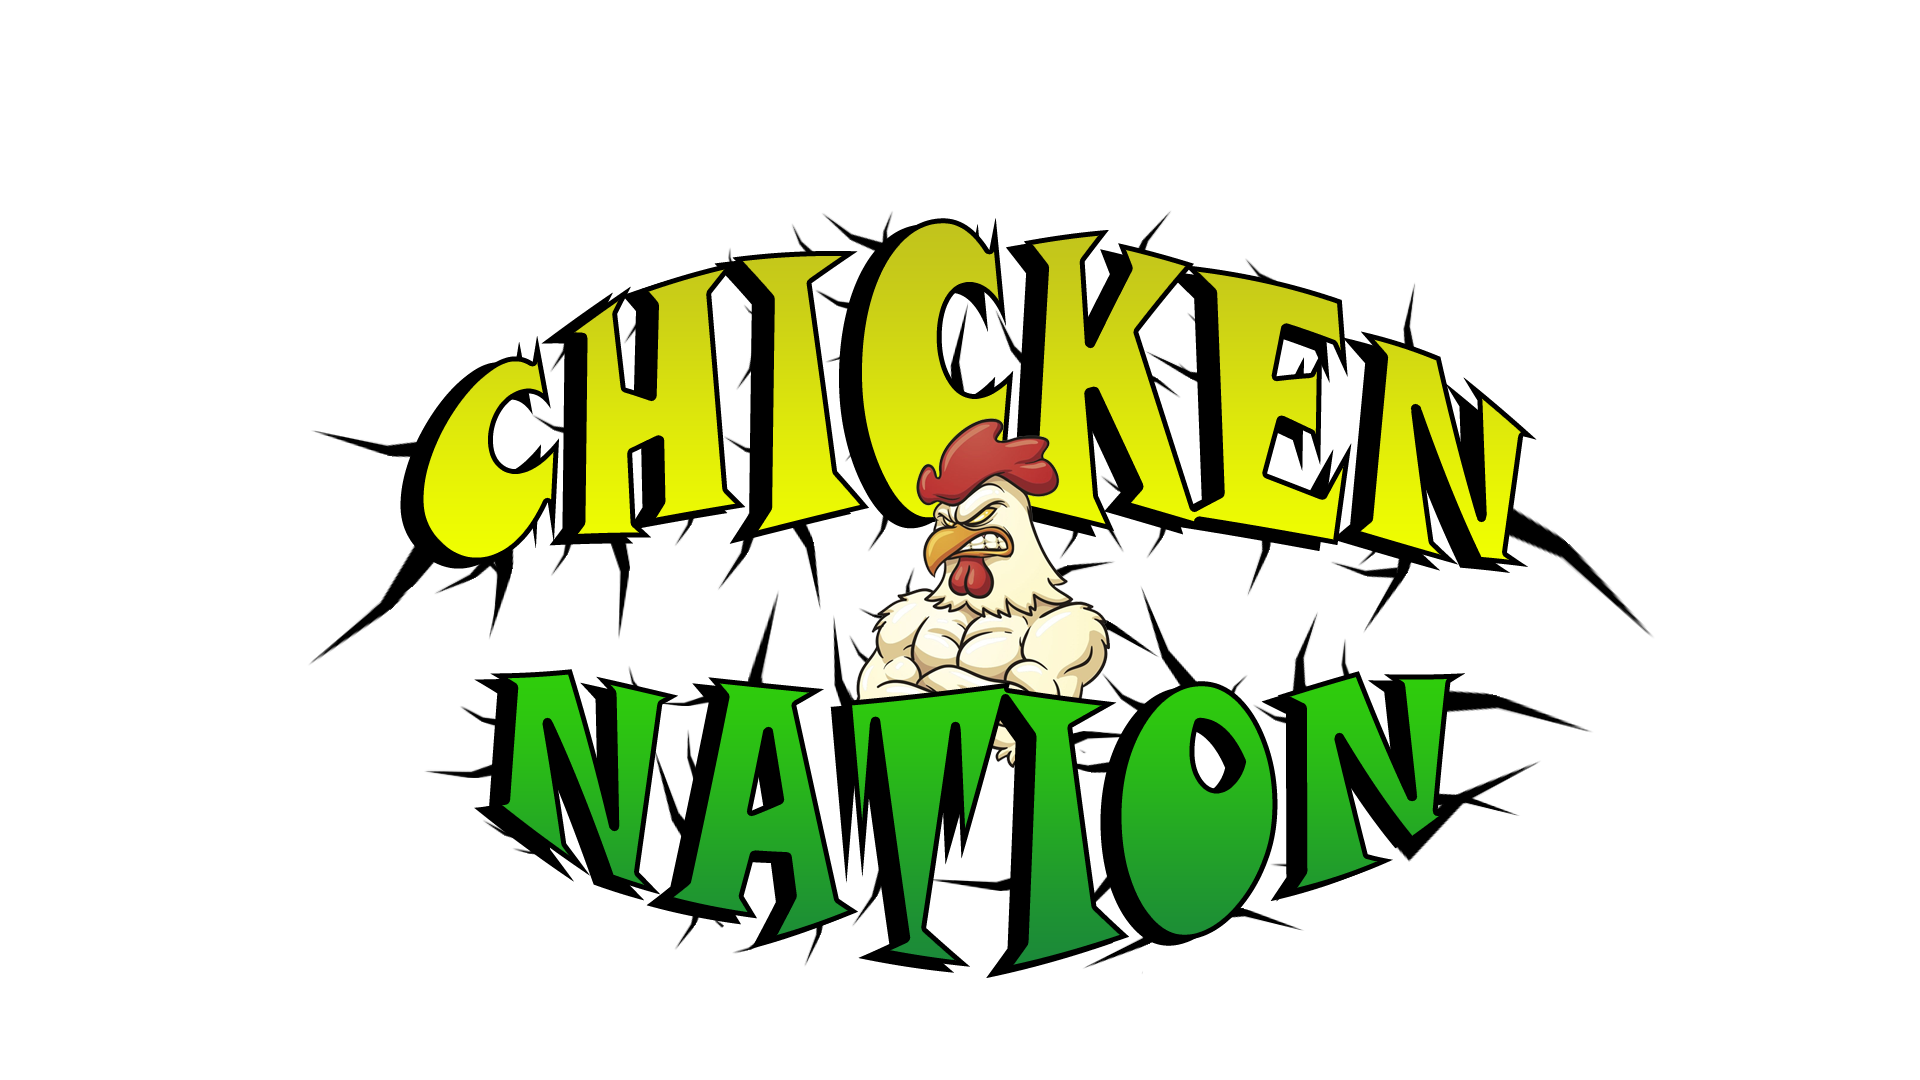 Chicken nation